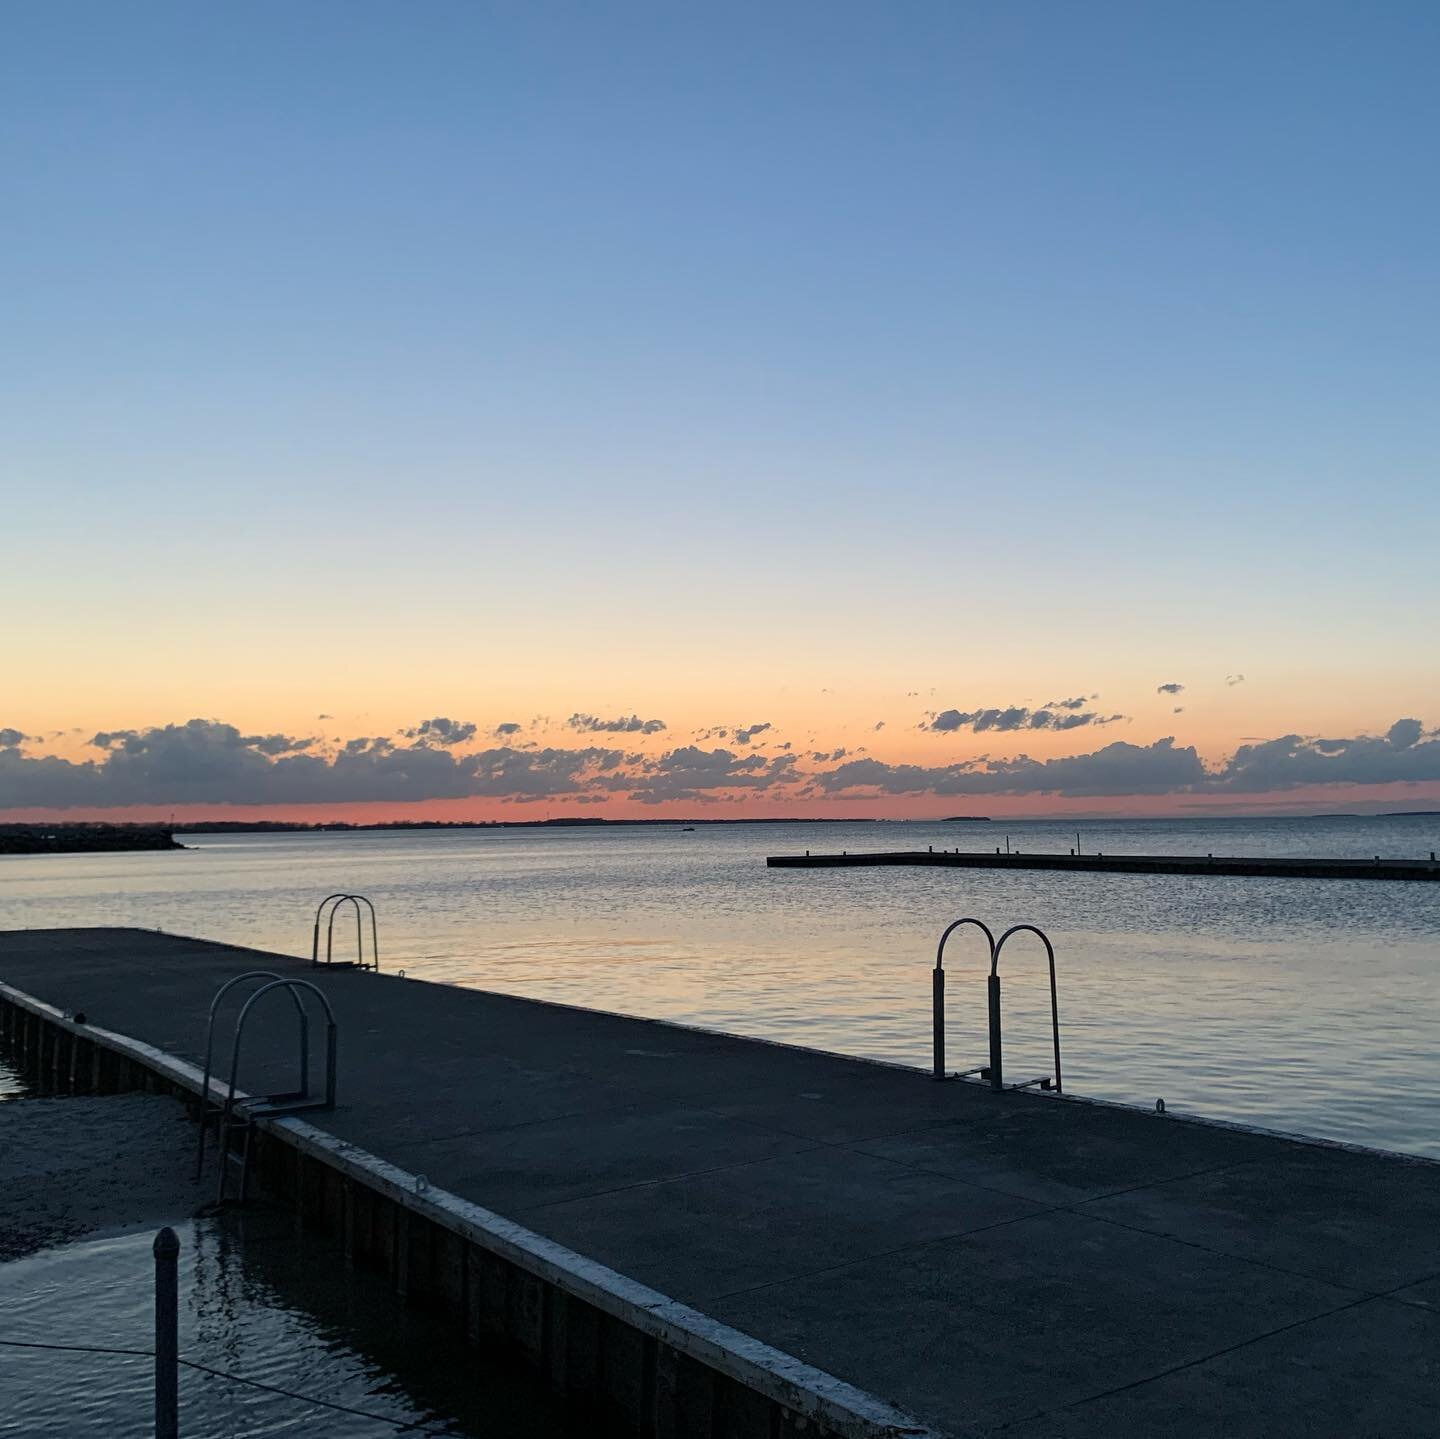 #sunsetyoga on the pier